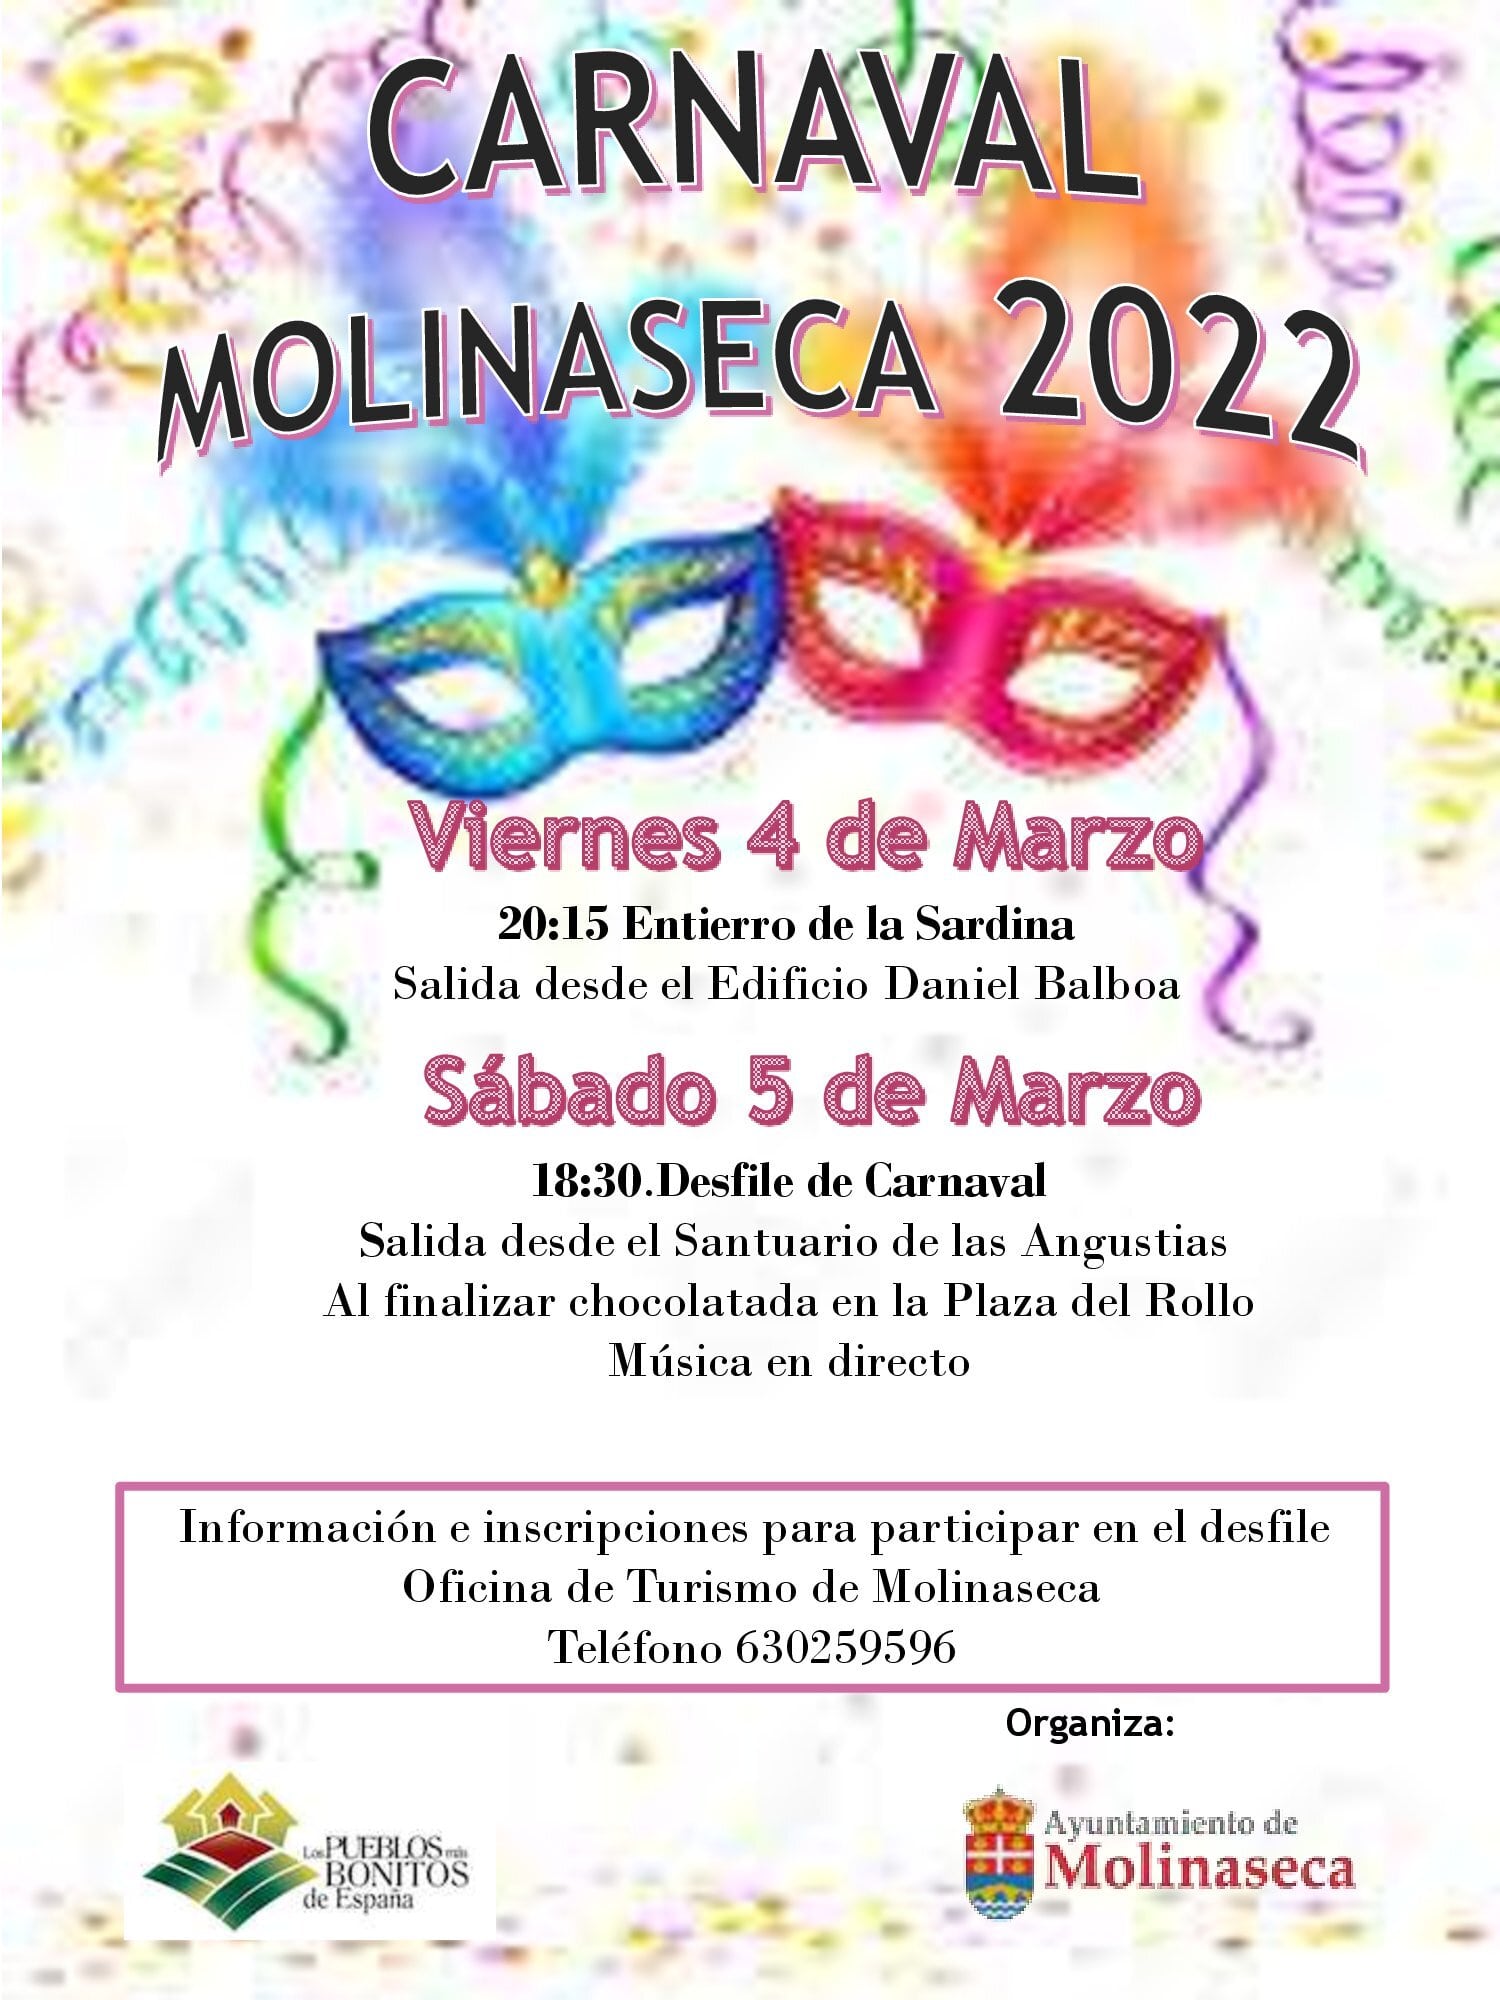 Carnavales en Molinaseca 2022. Entierro de la sardina y Desfile 2